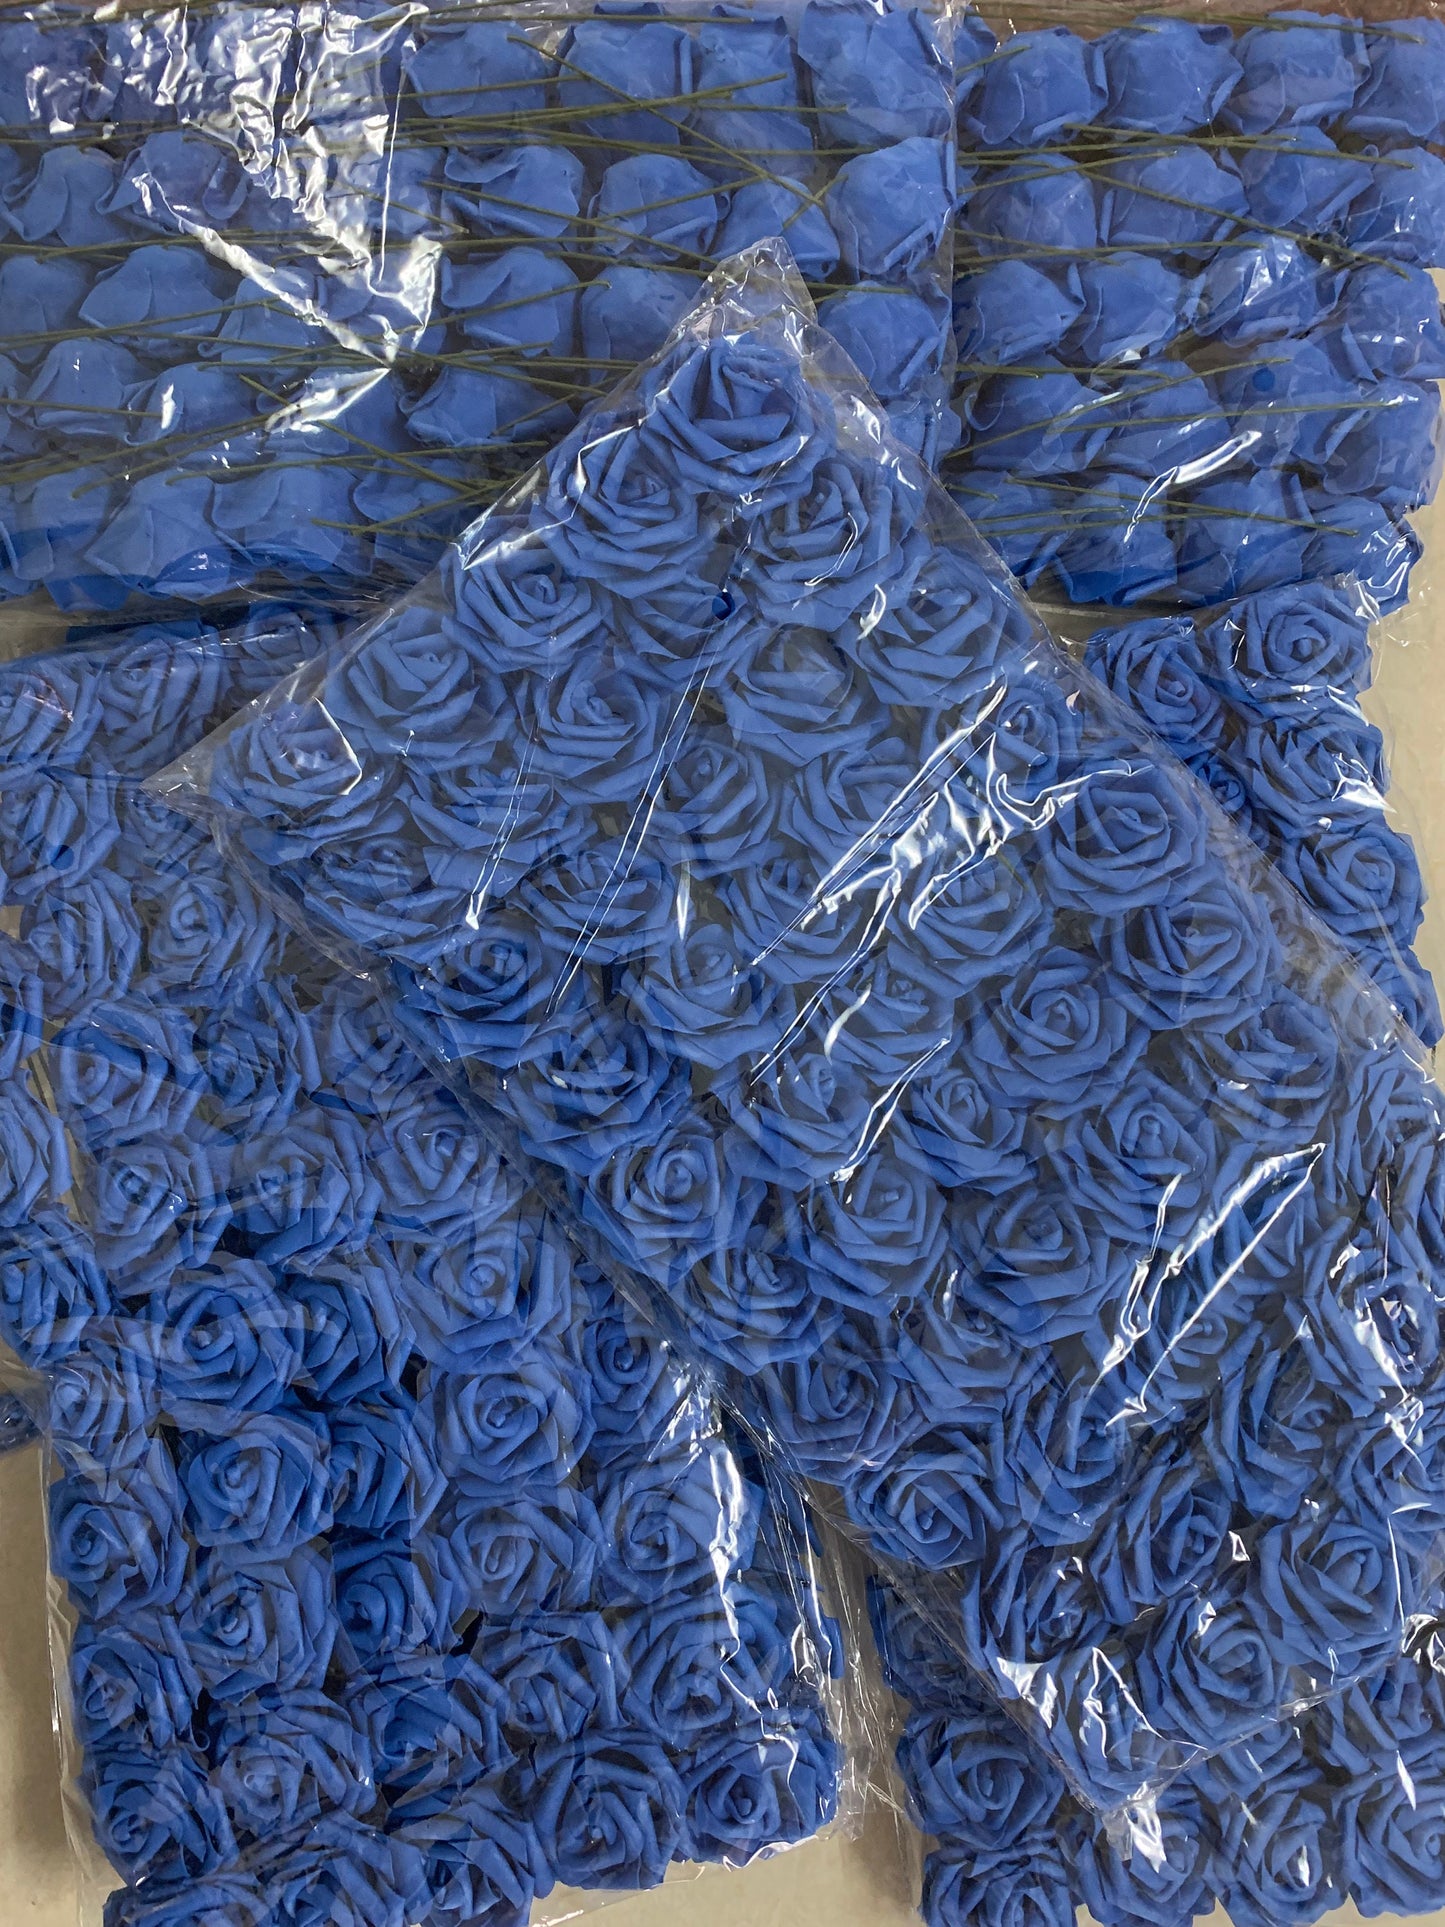 100 PCS Royal Blue Wedding Flowers PE Foam Roses For Bridal Bouquet Wedding Centerpiece Decoration Floral Diam.7-8cm